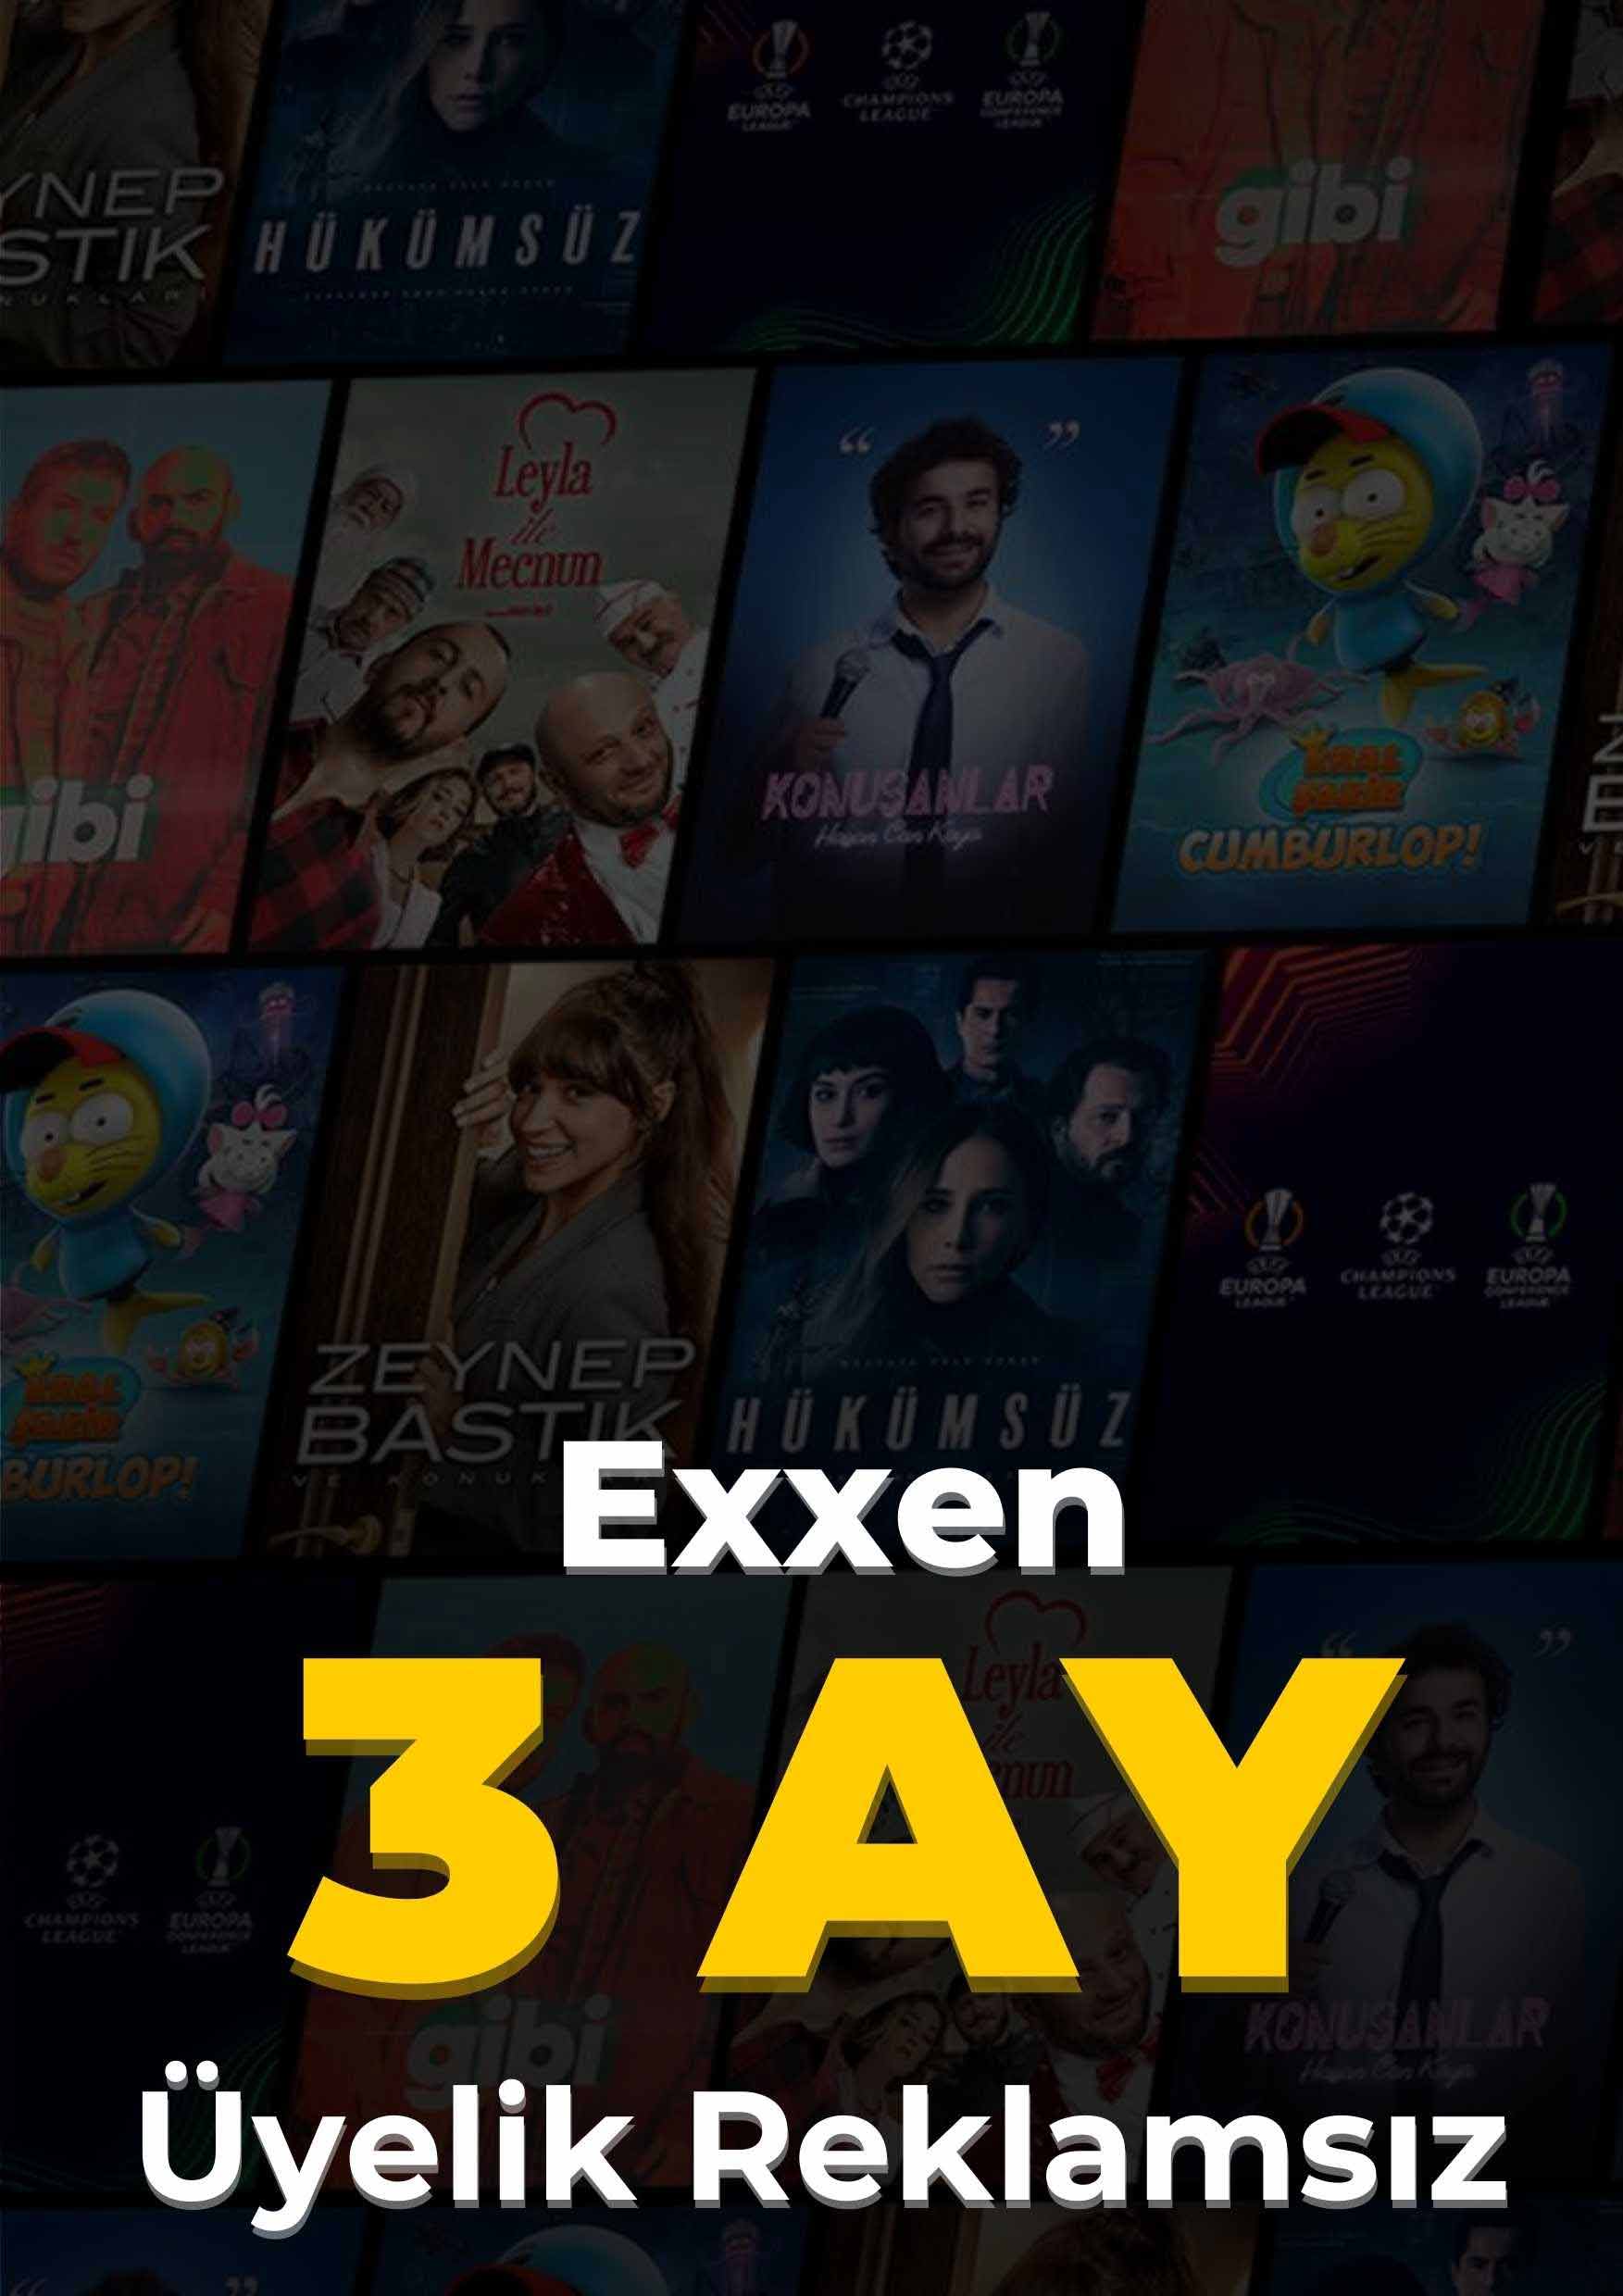 Exxen Spor 3 Ay (Reklamsız) 